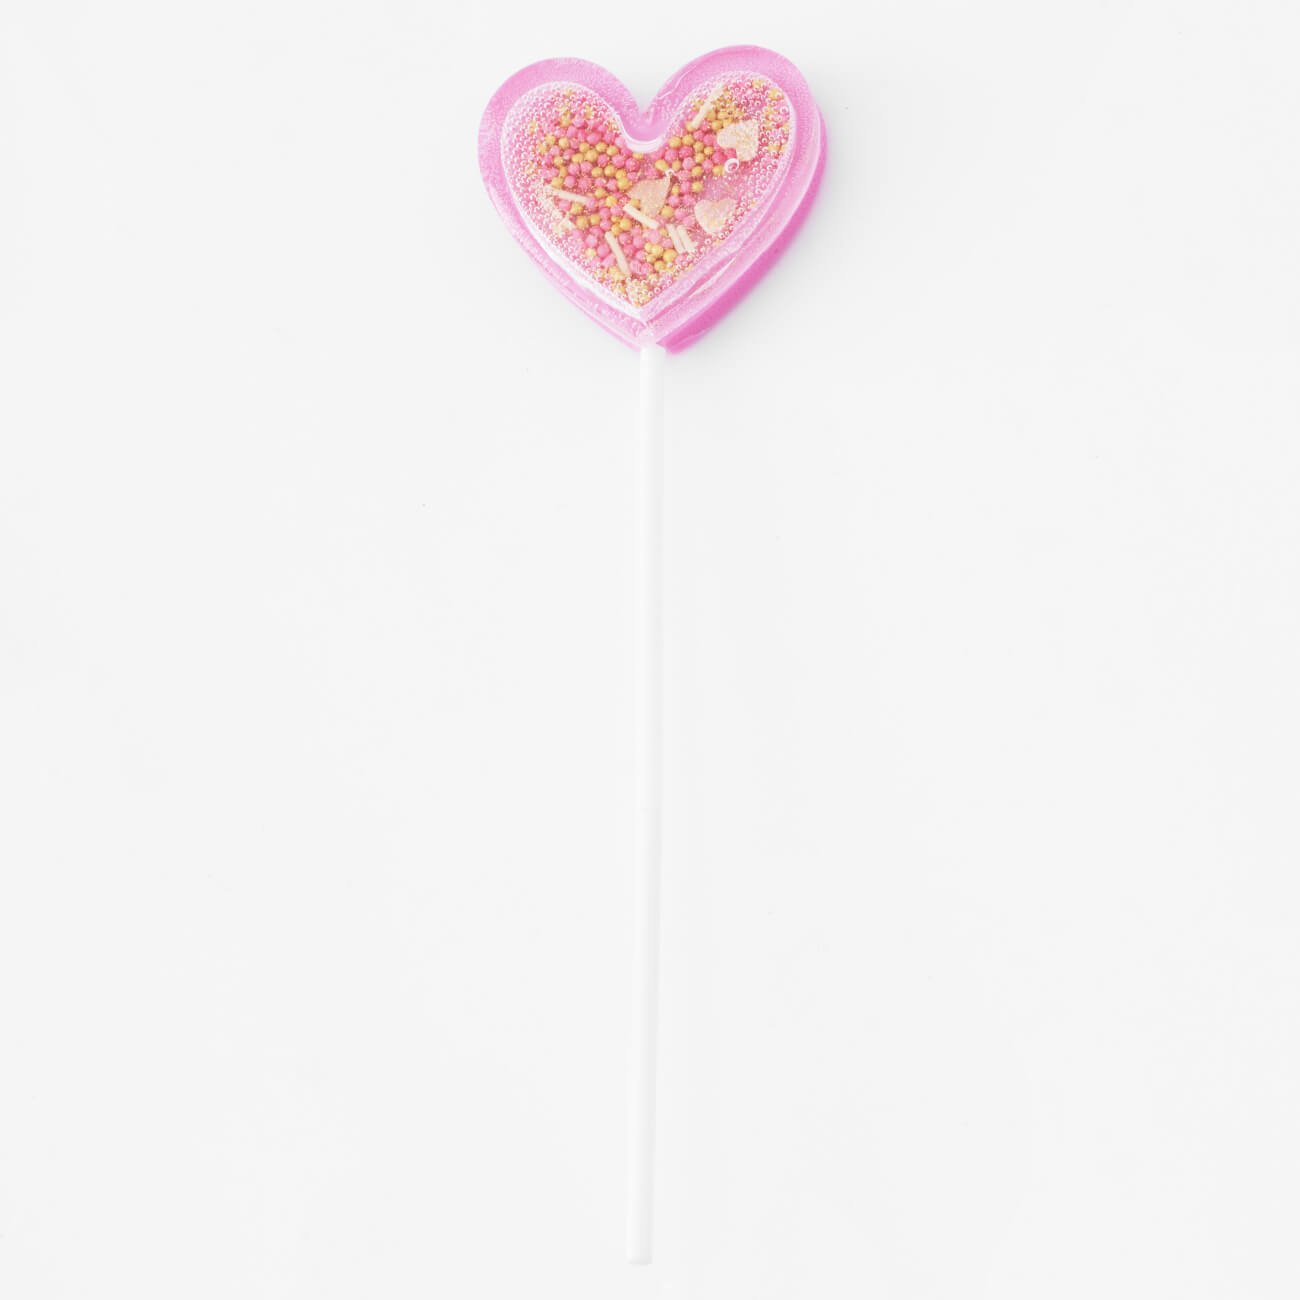 Леденец, 30 гр, погремушка, на палочке, изомальт, розовый, Сердце, Heart изображение № 1